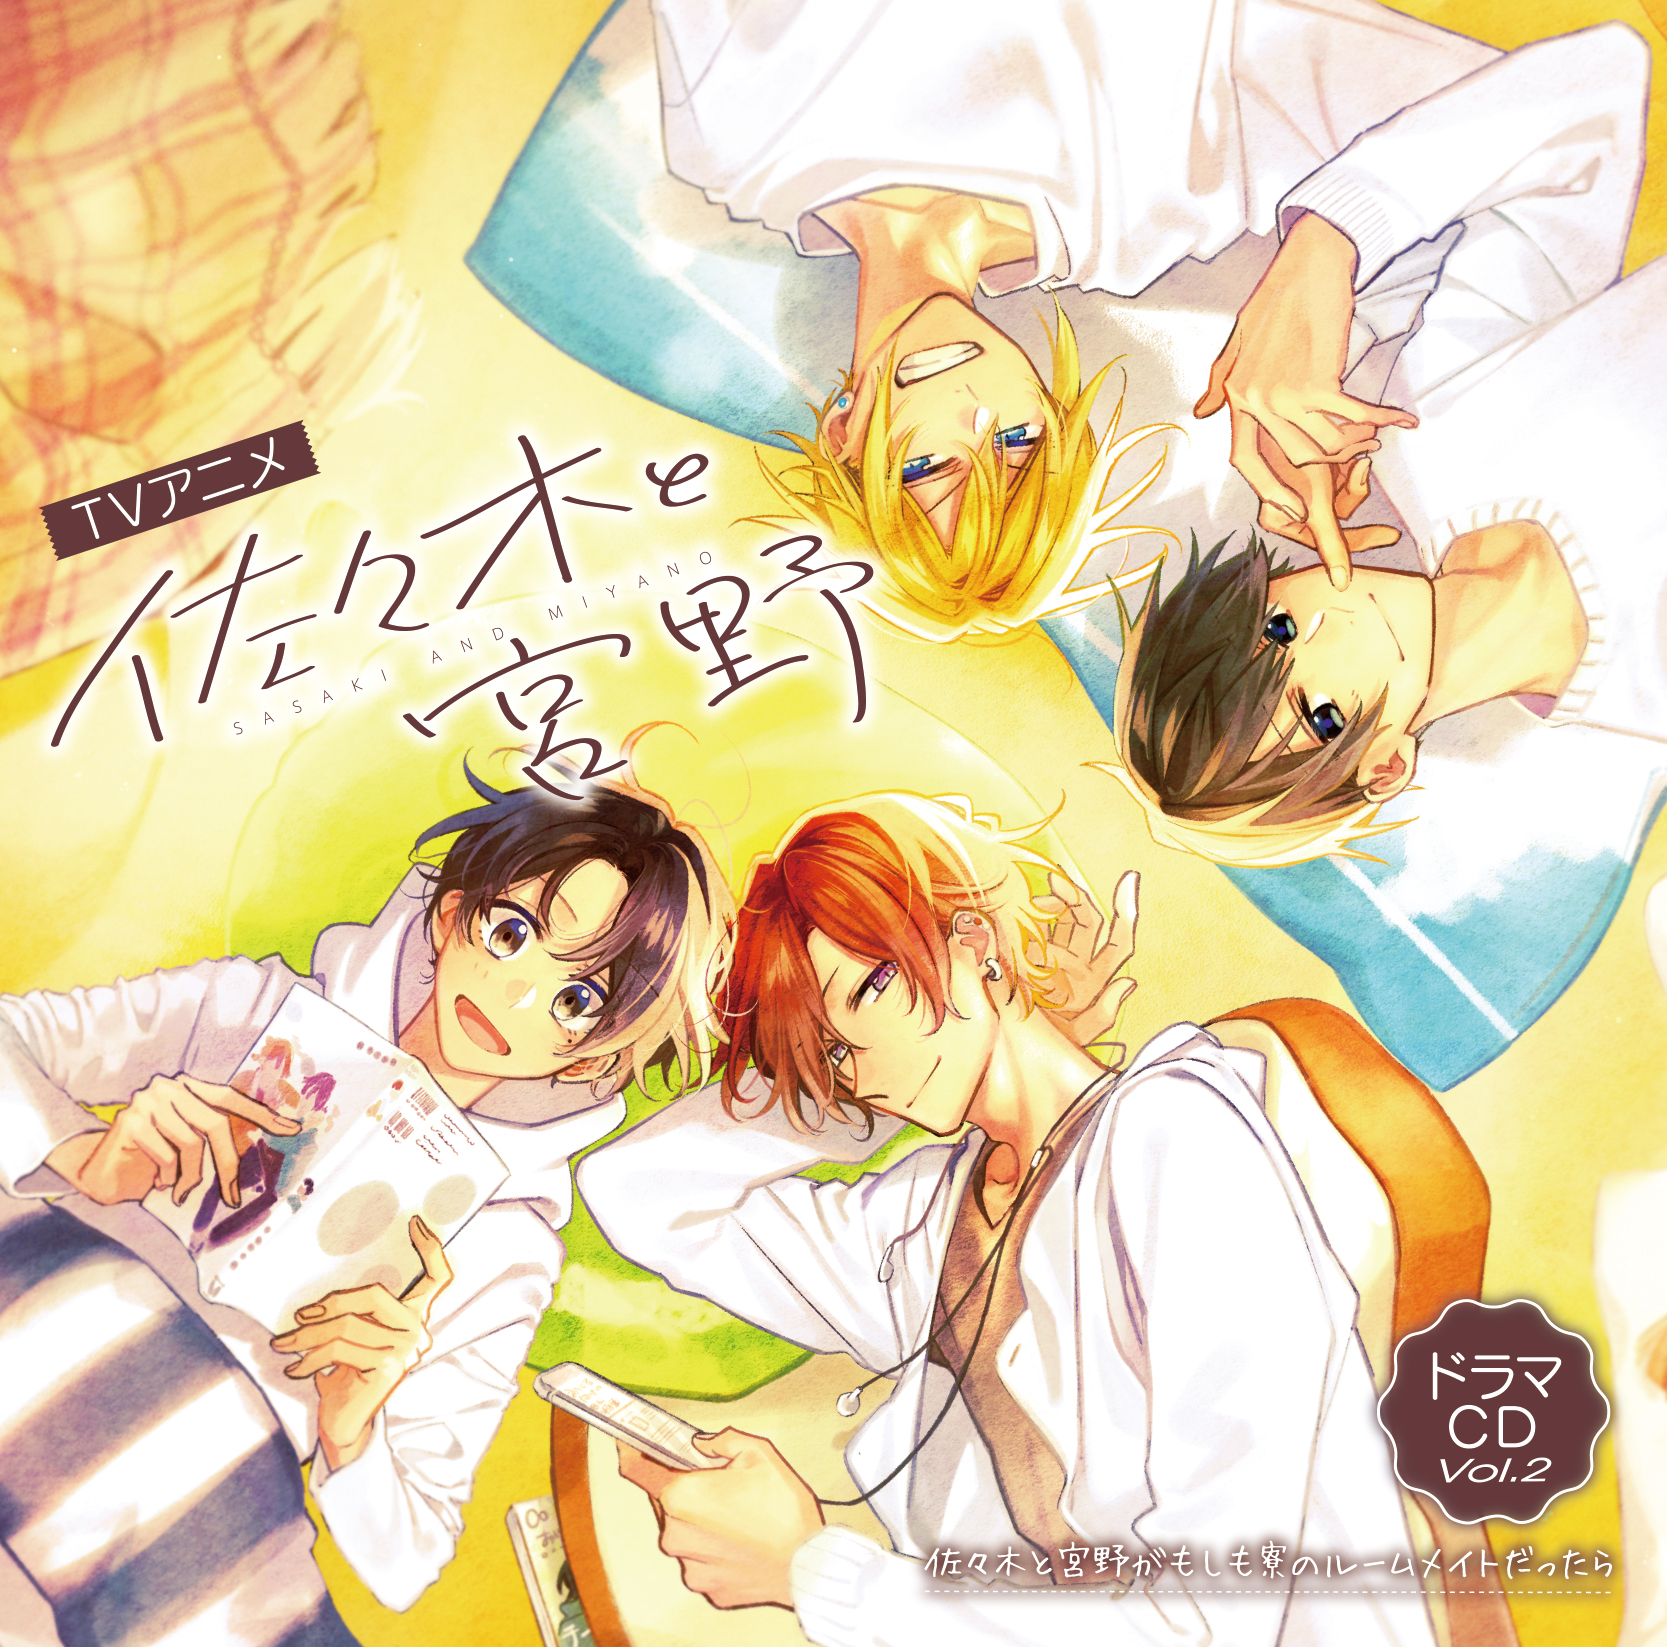 Hirano to Kagiura | Anime guys, Anime, Manga covers